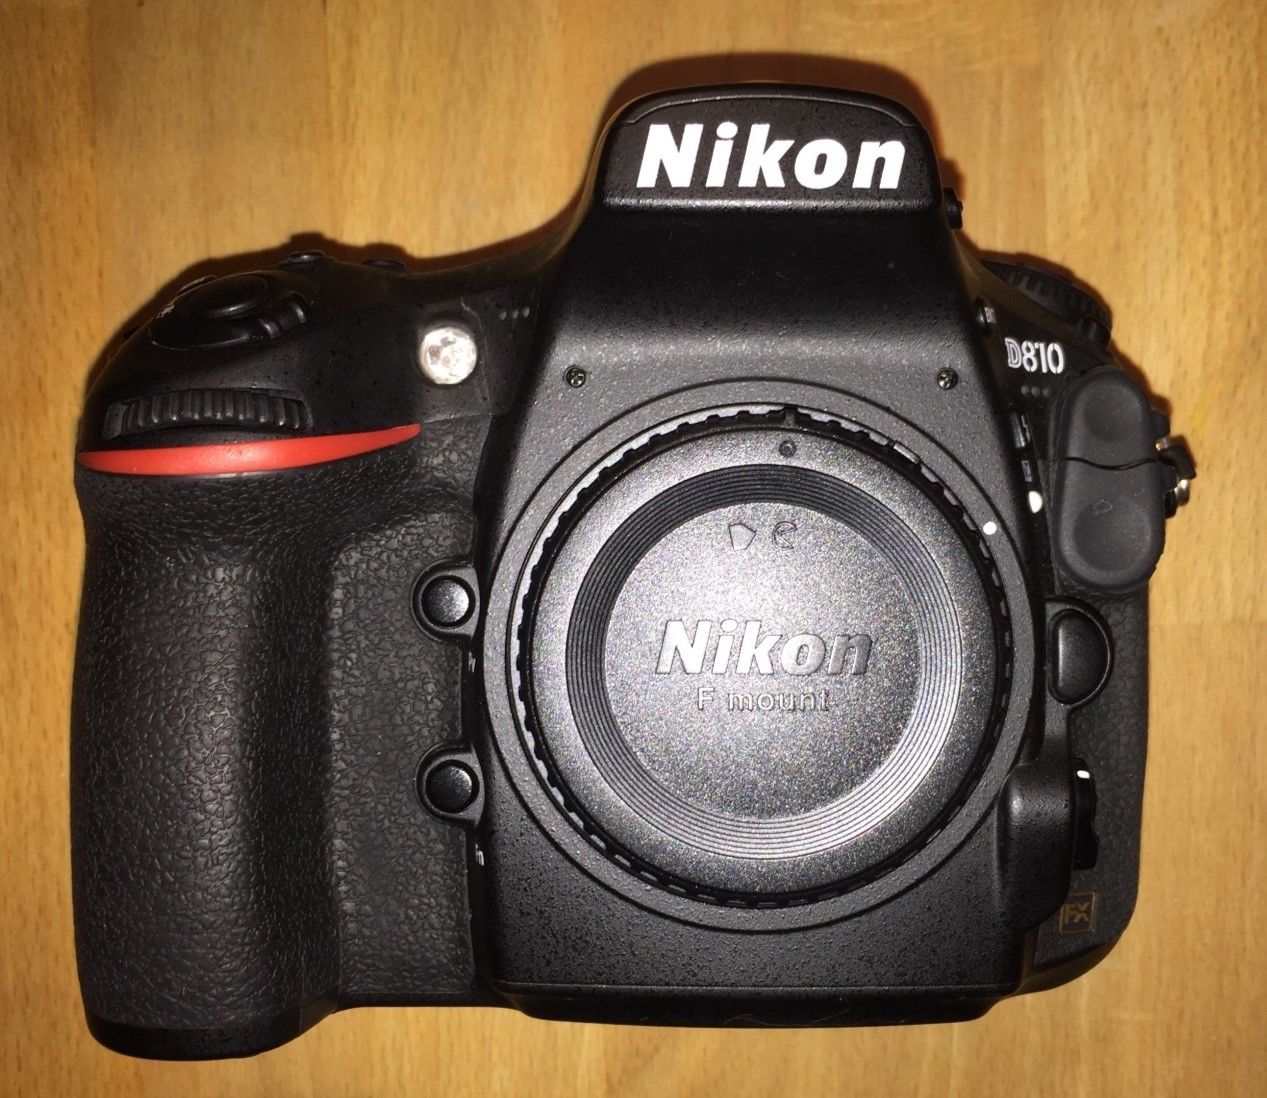 Nikon D 810 (Gehäuse), 36,3 MP, sehr guter Zustand, 7800 Auslösungen